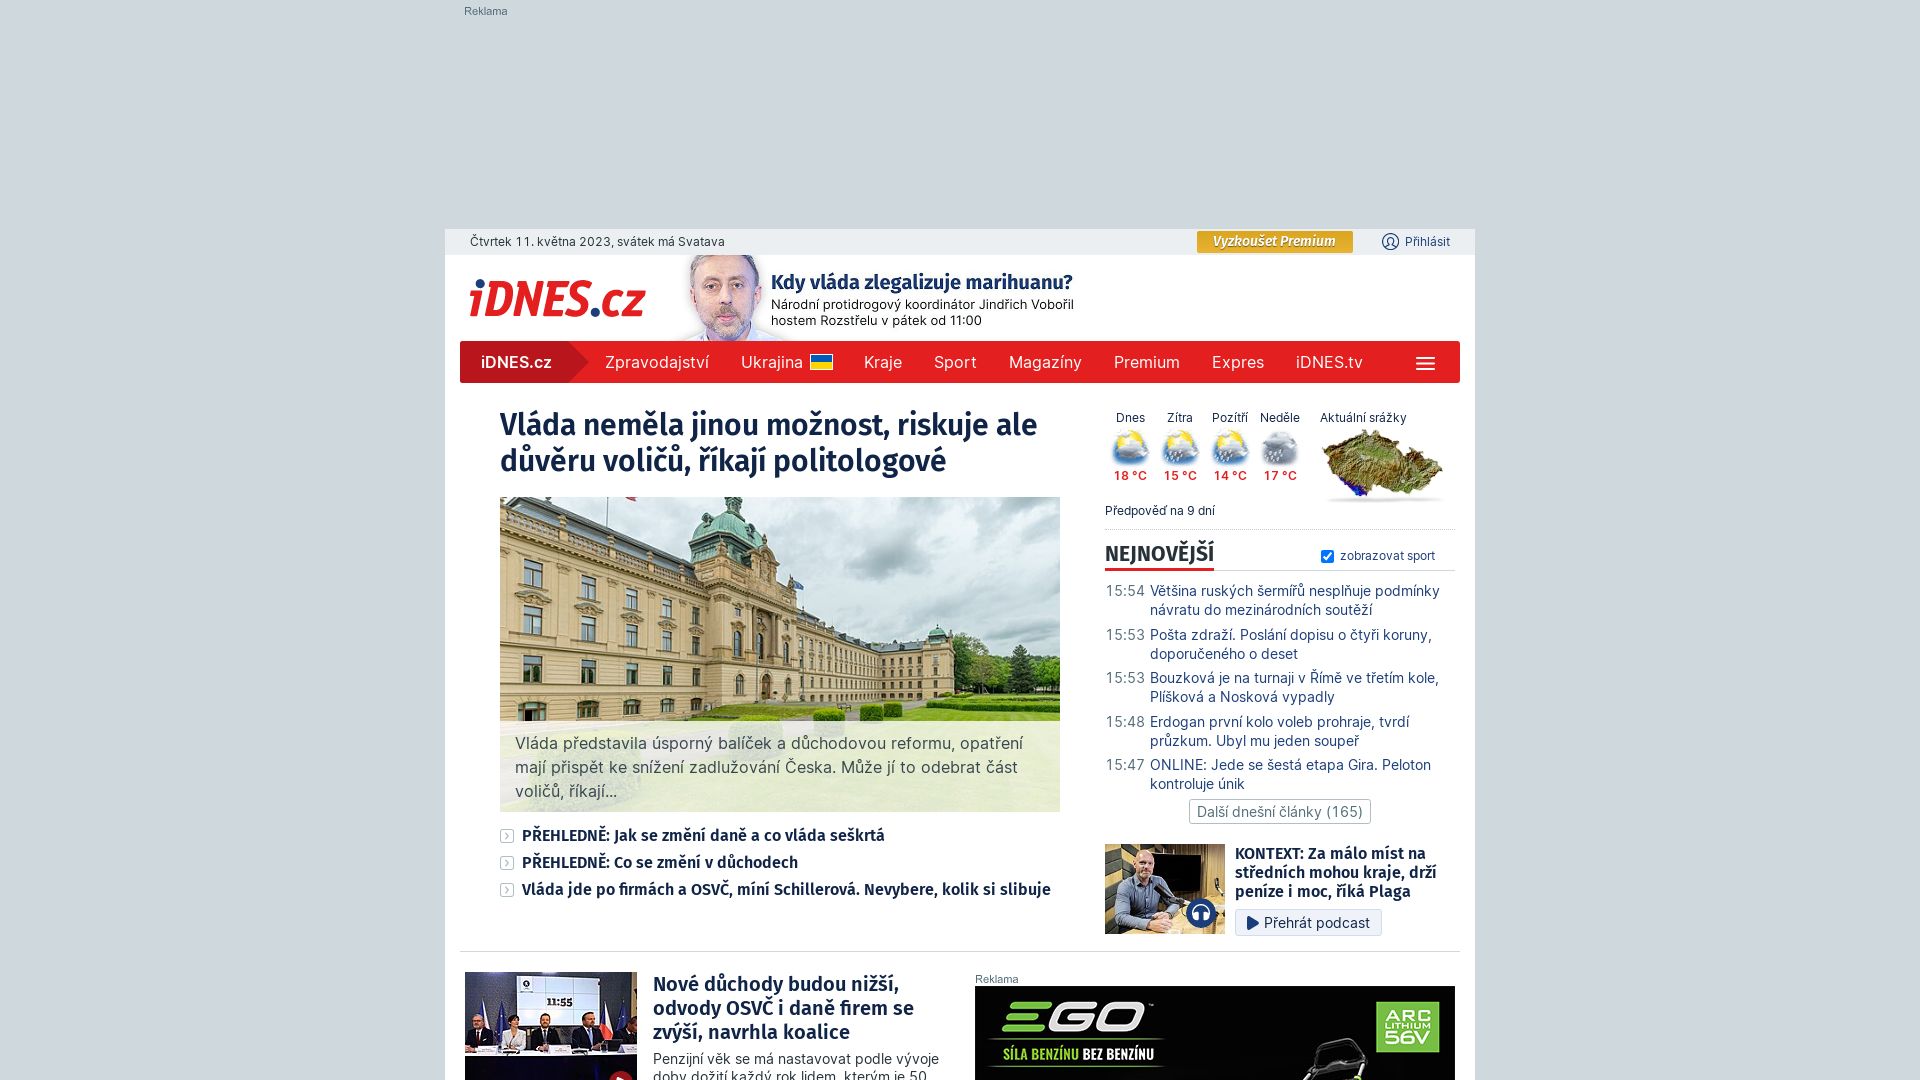 Status do site idnes.cz está   ONLINE